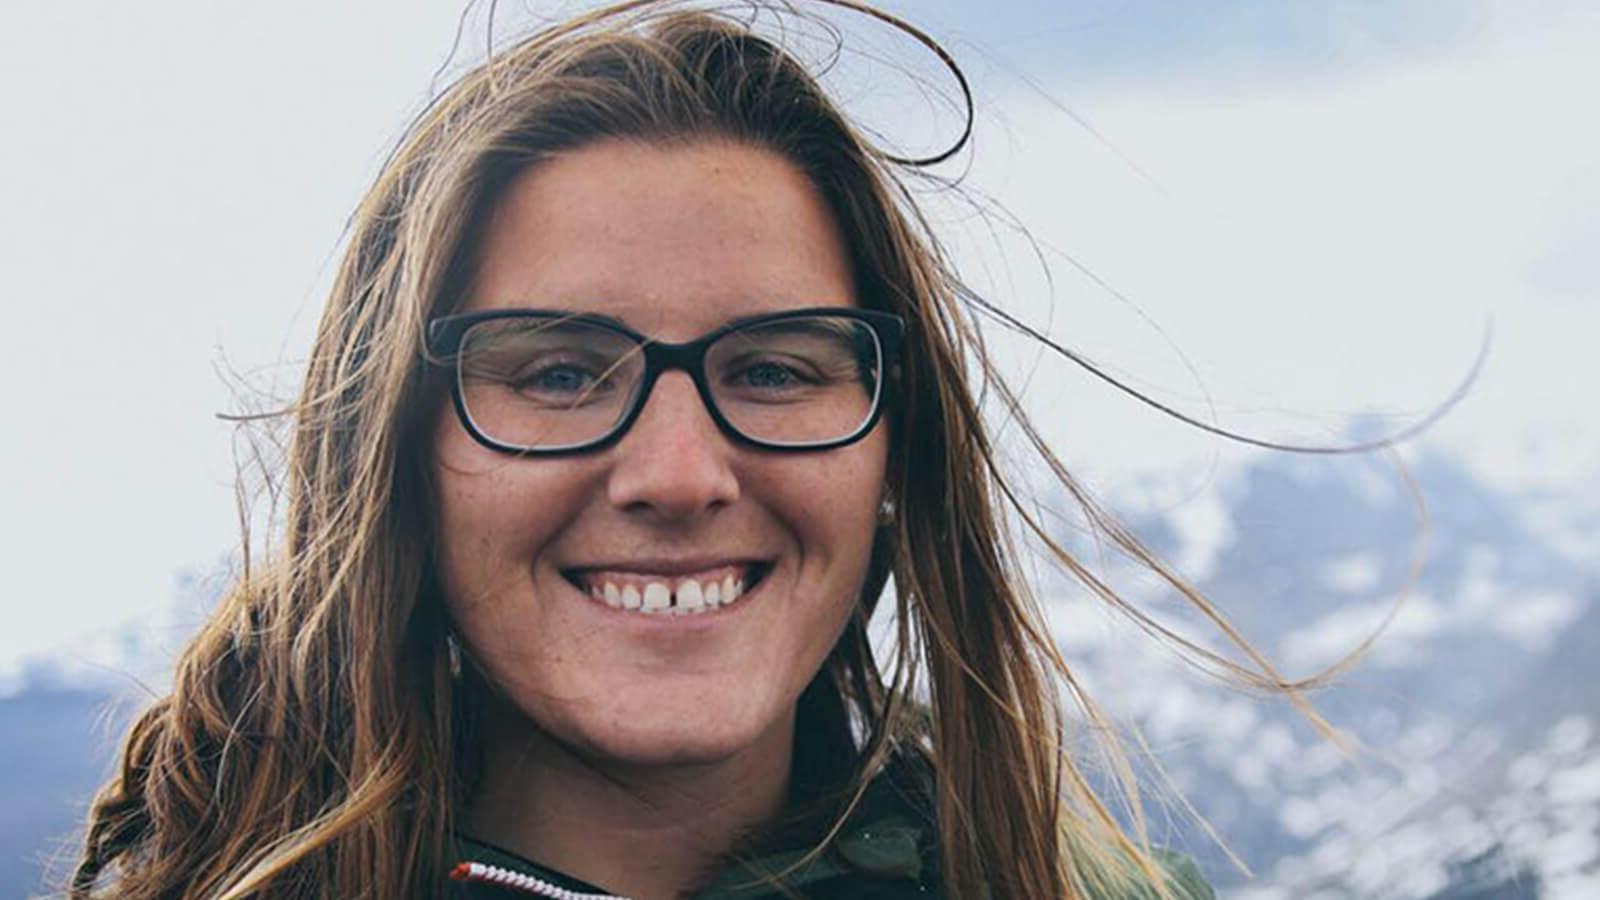 Full Sail毕业生SaJorden Miller肩部以上的照片, 背景是白雪皑皑的山脉. 她面带微笑，穿着一件橙色的绿色拉链夹克，戴着一副黑框眼镜.